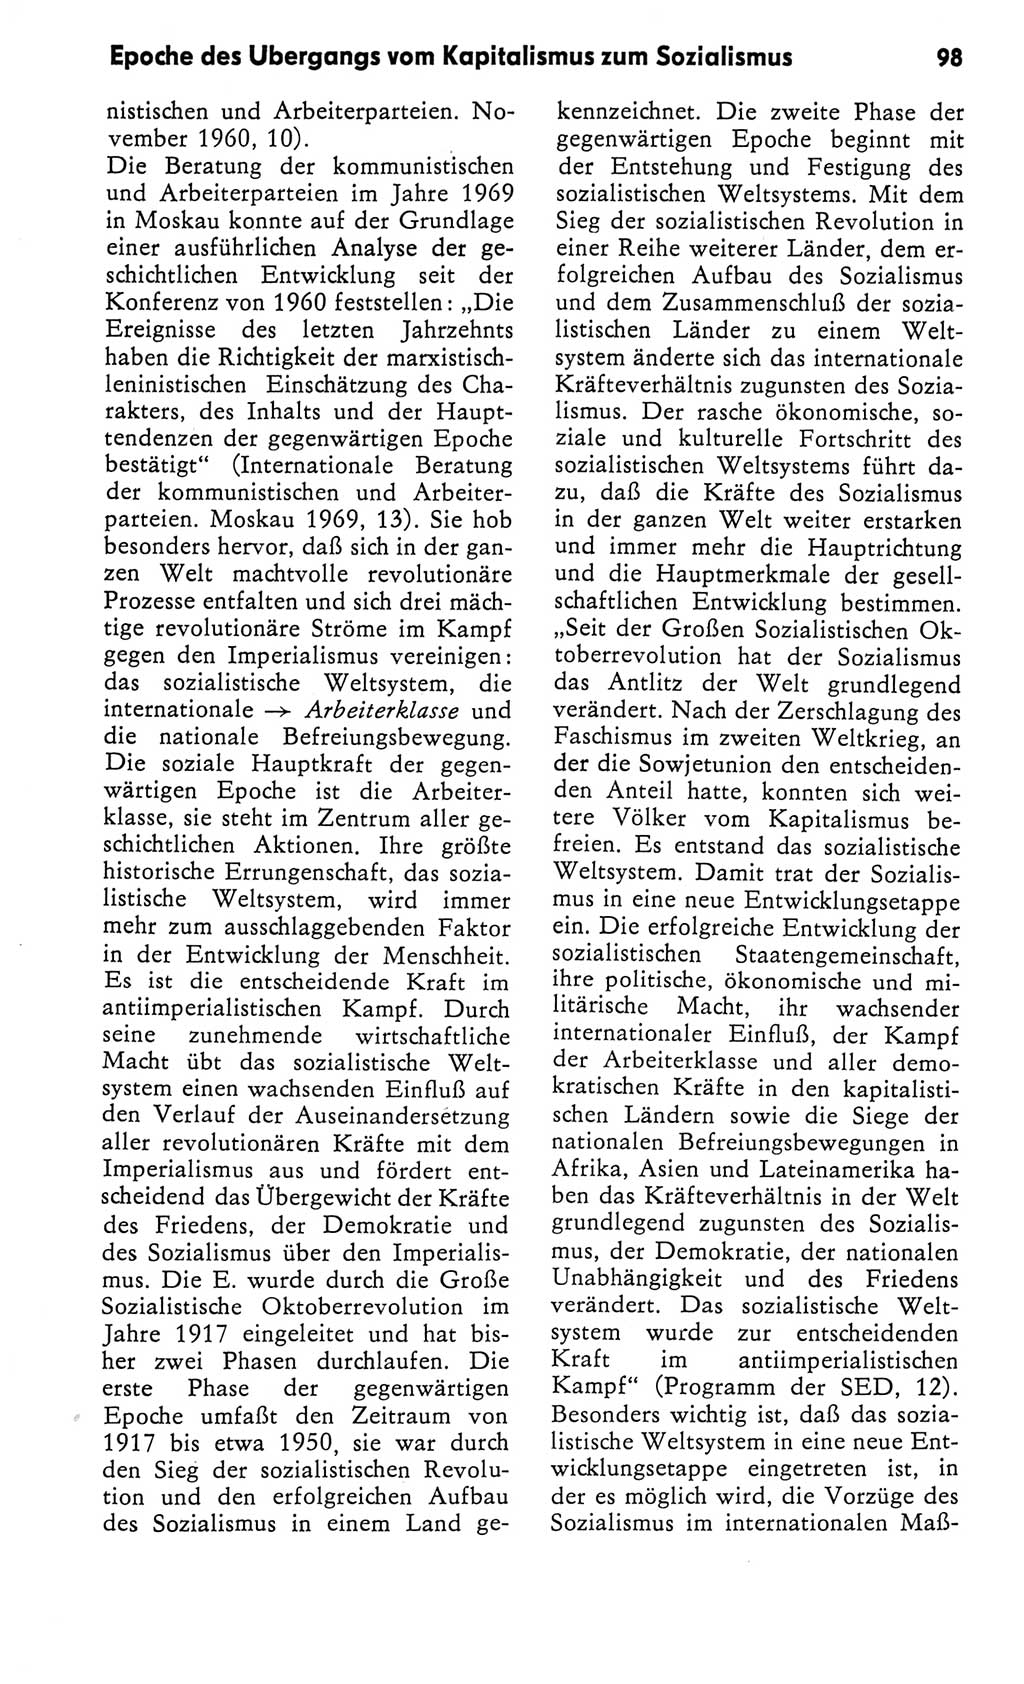 Kleines Wörterbuch der marxistisch-leninistischen Philosophie [Deutsche Demokratische Republik (DDR)] 1982, Seite 98 (Kl. Wb. ML Phil. DDR 1982, S. 98)